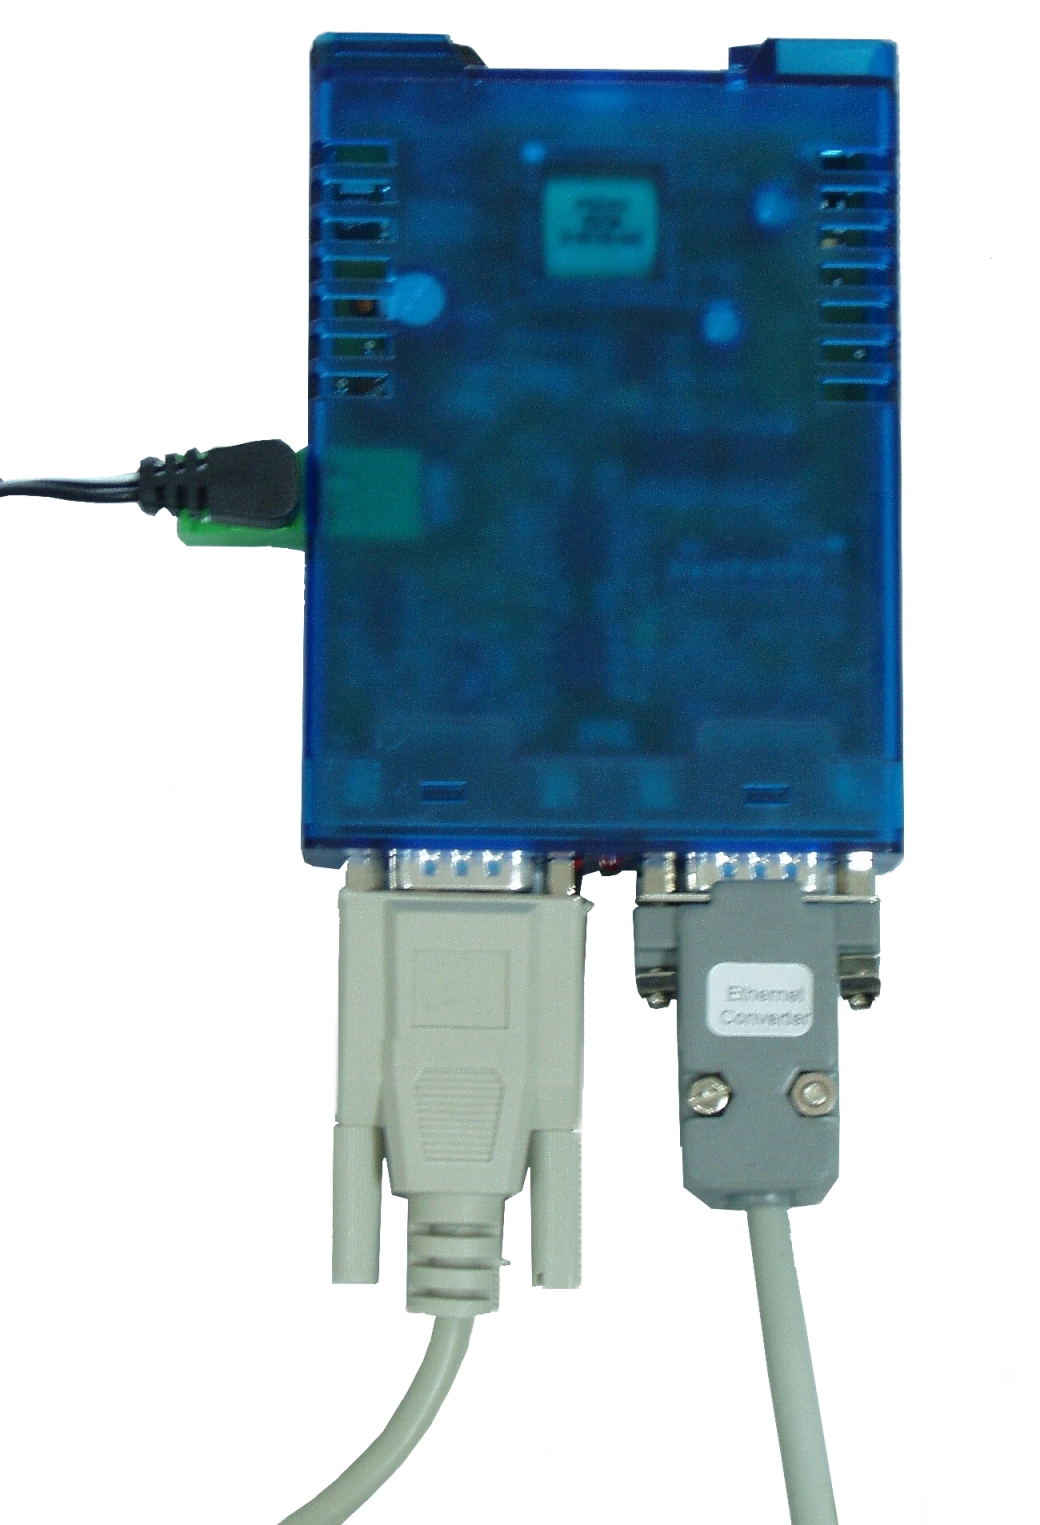 RUS 3. Описание Конвертер интерфейсов RS232/RS422-RS485 - независимое электрическое оборудование с внешней подачей электроэнергии (блок питания, 24В, переменный ток).